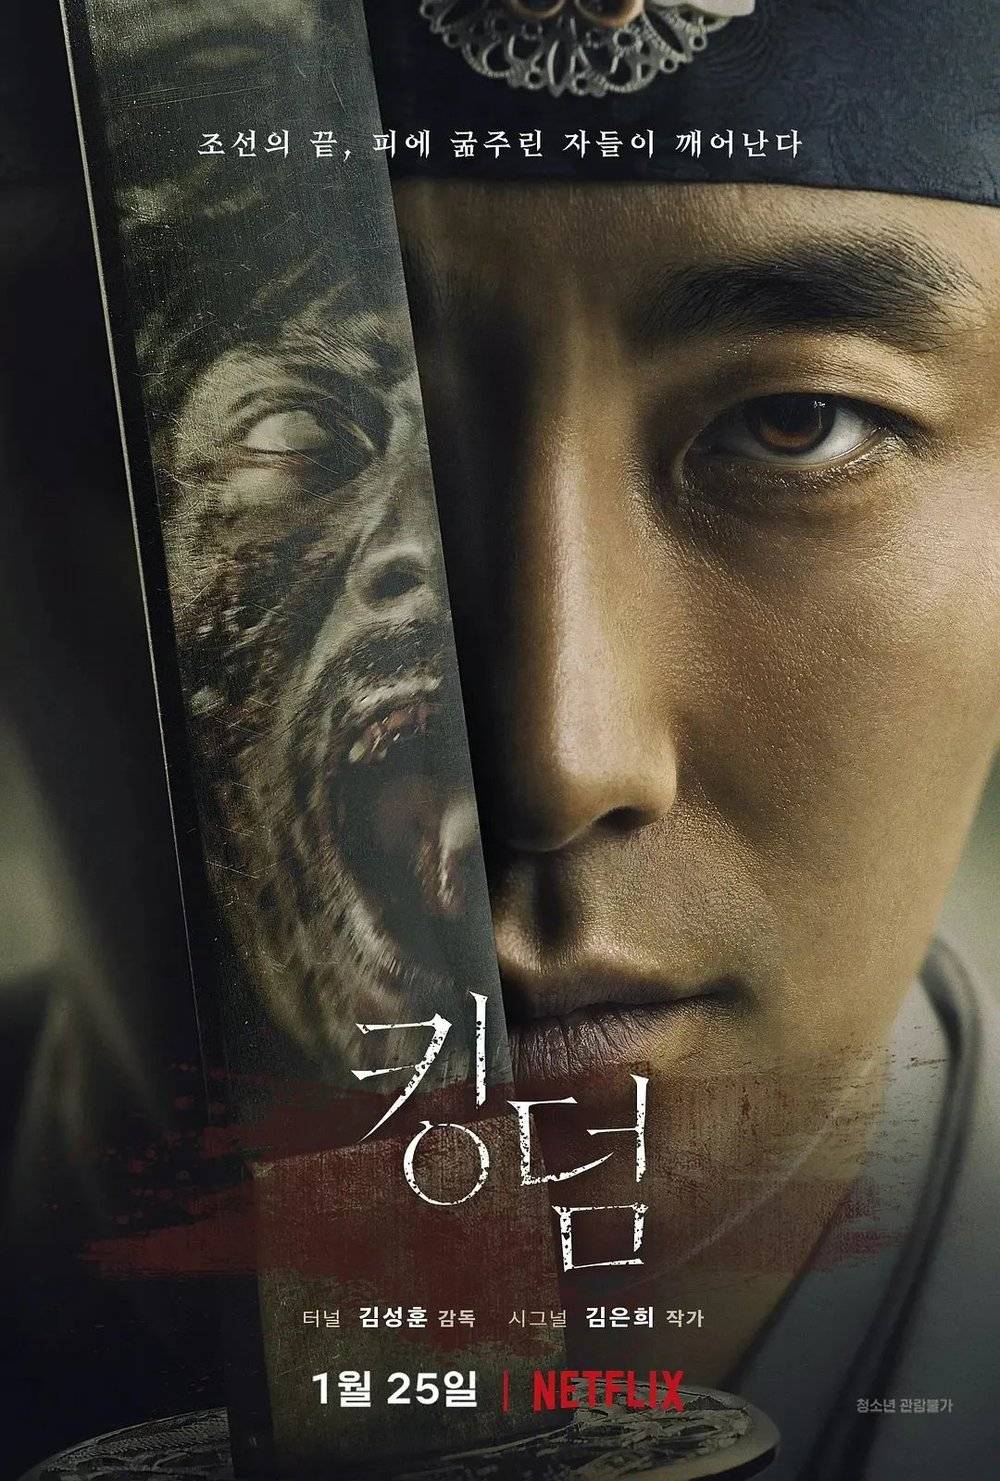 Netflix在韩国的第一部自制剧《王国》<br>